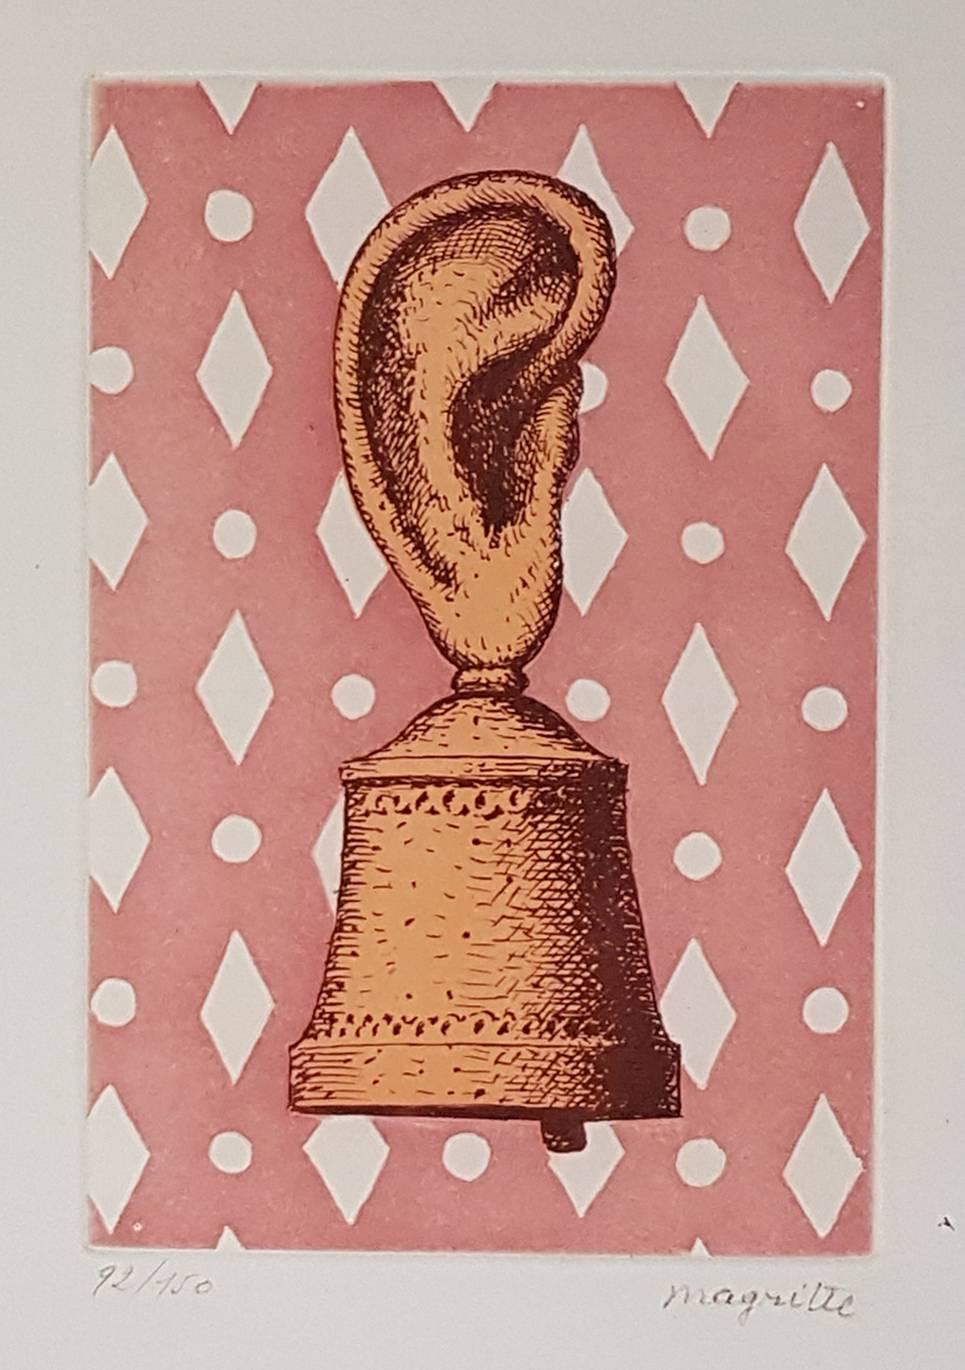 Figurative Print (after) René Magritte - La Leon de Musique, Son de Cloche, eau-forte, 1968